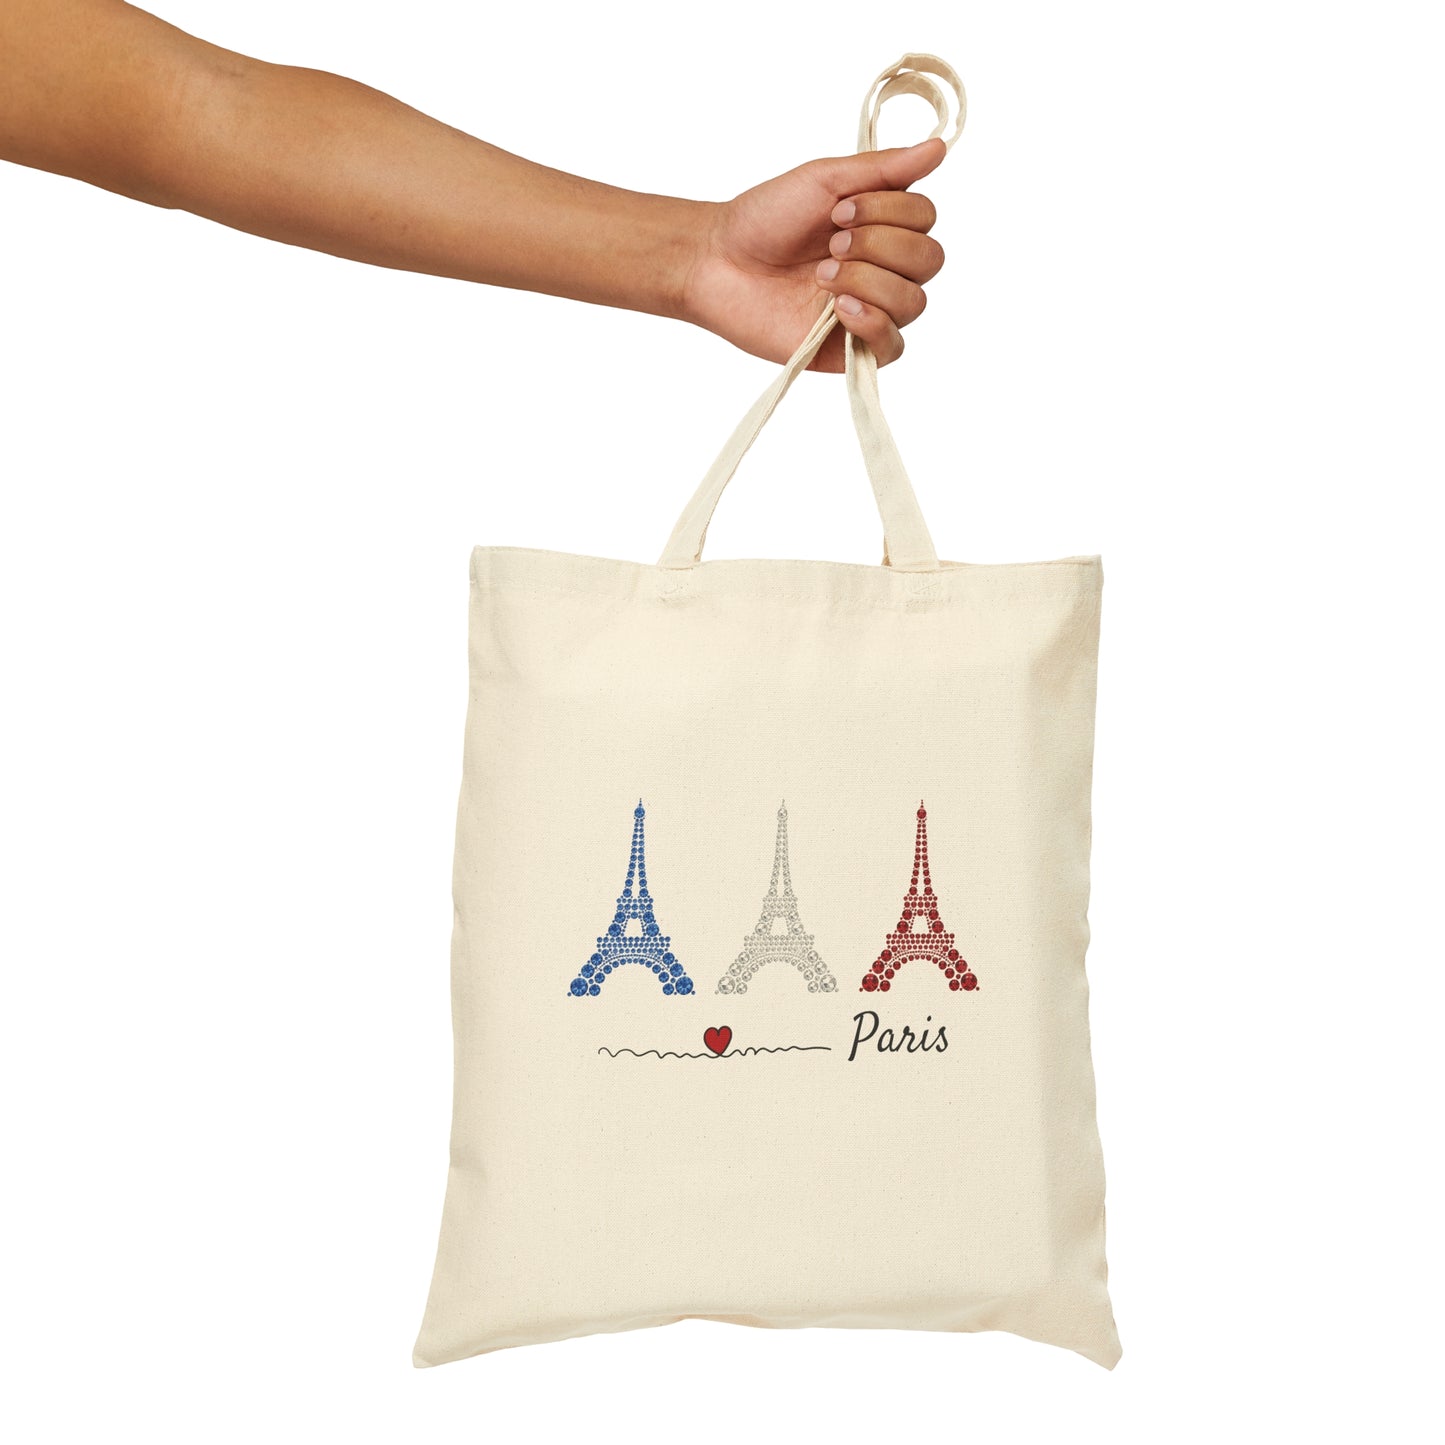 Paris Cotton Canvas Tote Bag, Eiffel Tower Tote Bag, Eiffel Tower Bag, I Love Paris Bag, France Tote Bag